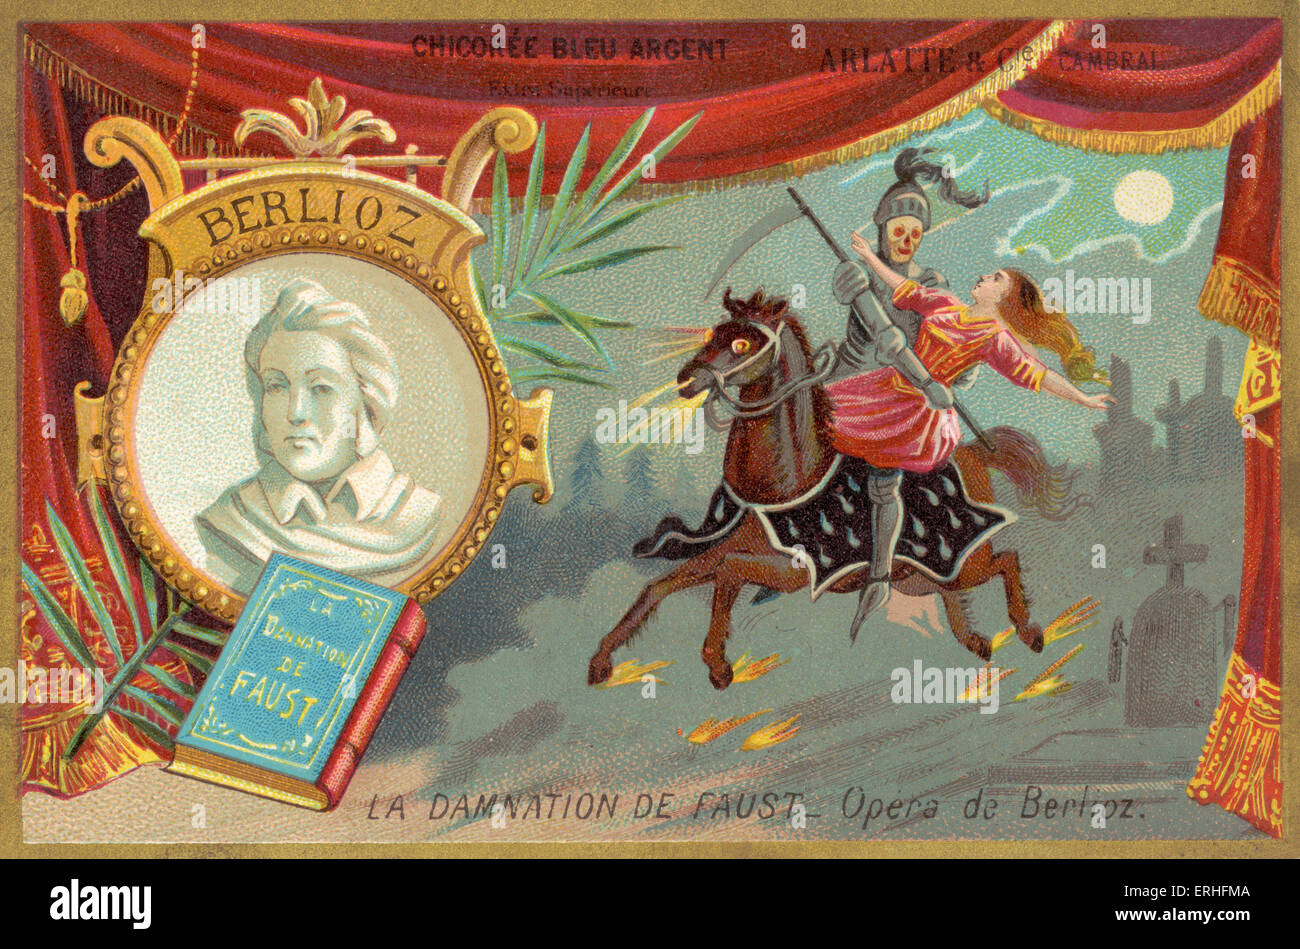 Louis Hector Berlioz 's opera "La Damnation de Faust' - illustrazione di scena con scheletro / Faust in sella ad un cavallo con una donna e il ritratto di Berlioz. Il compositore francese 11 Dicembre 1803 - 8 marzo 1869. Foto Stock